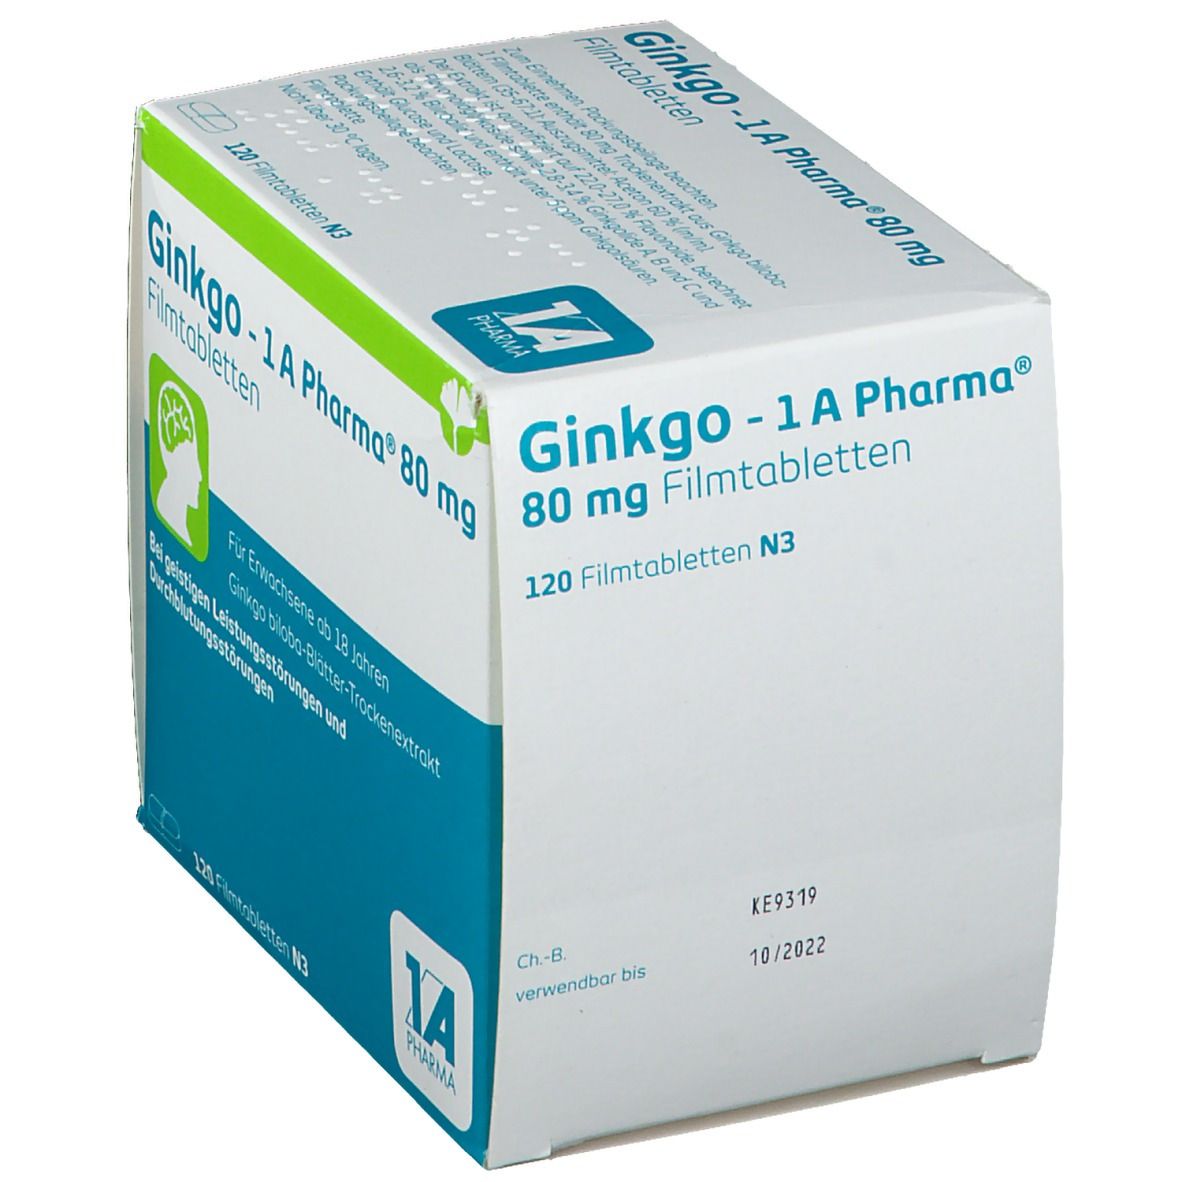 Ginkgo - 1A Pharma® 80 mg